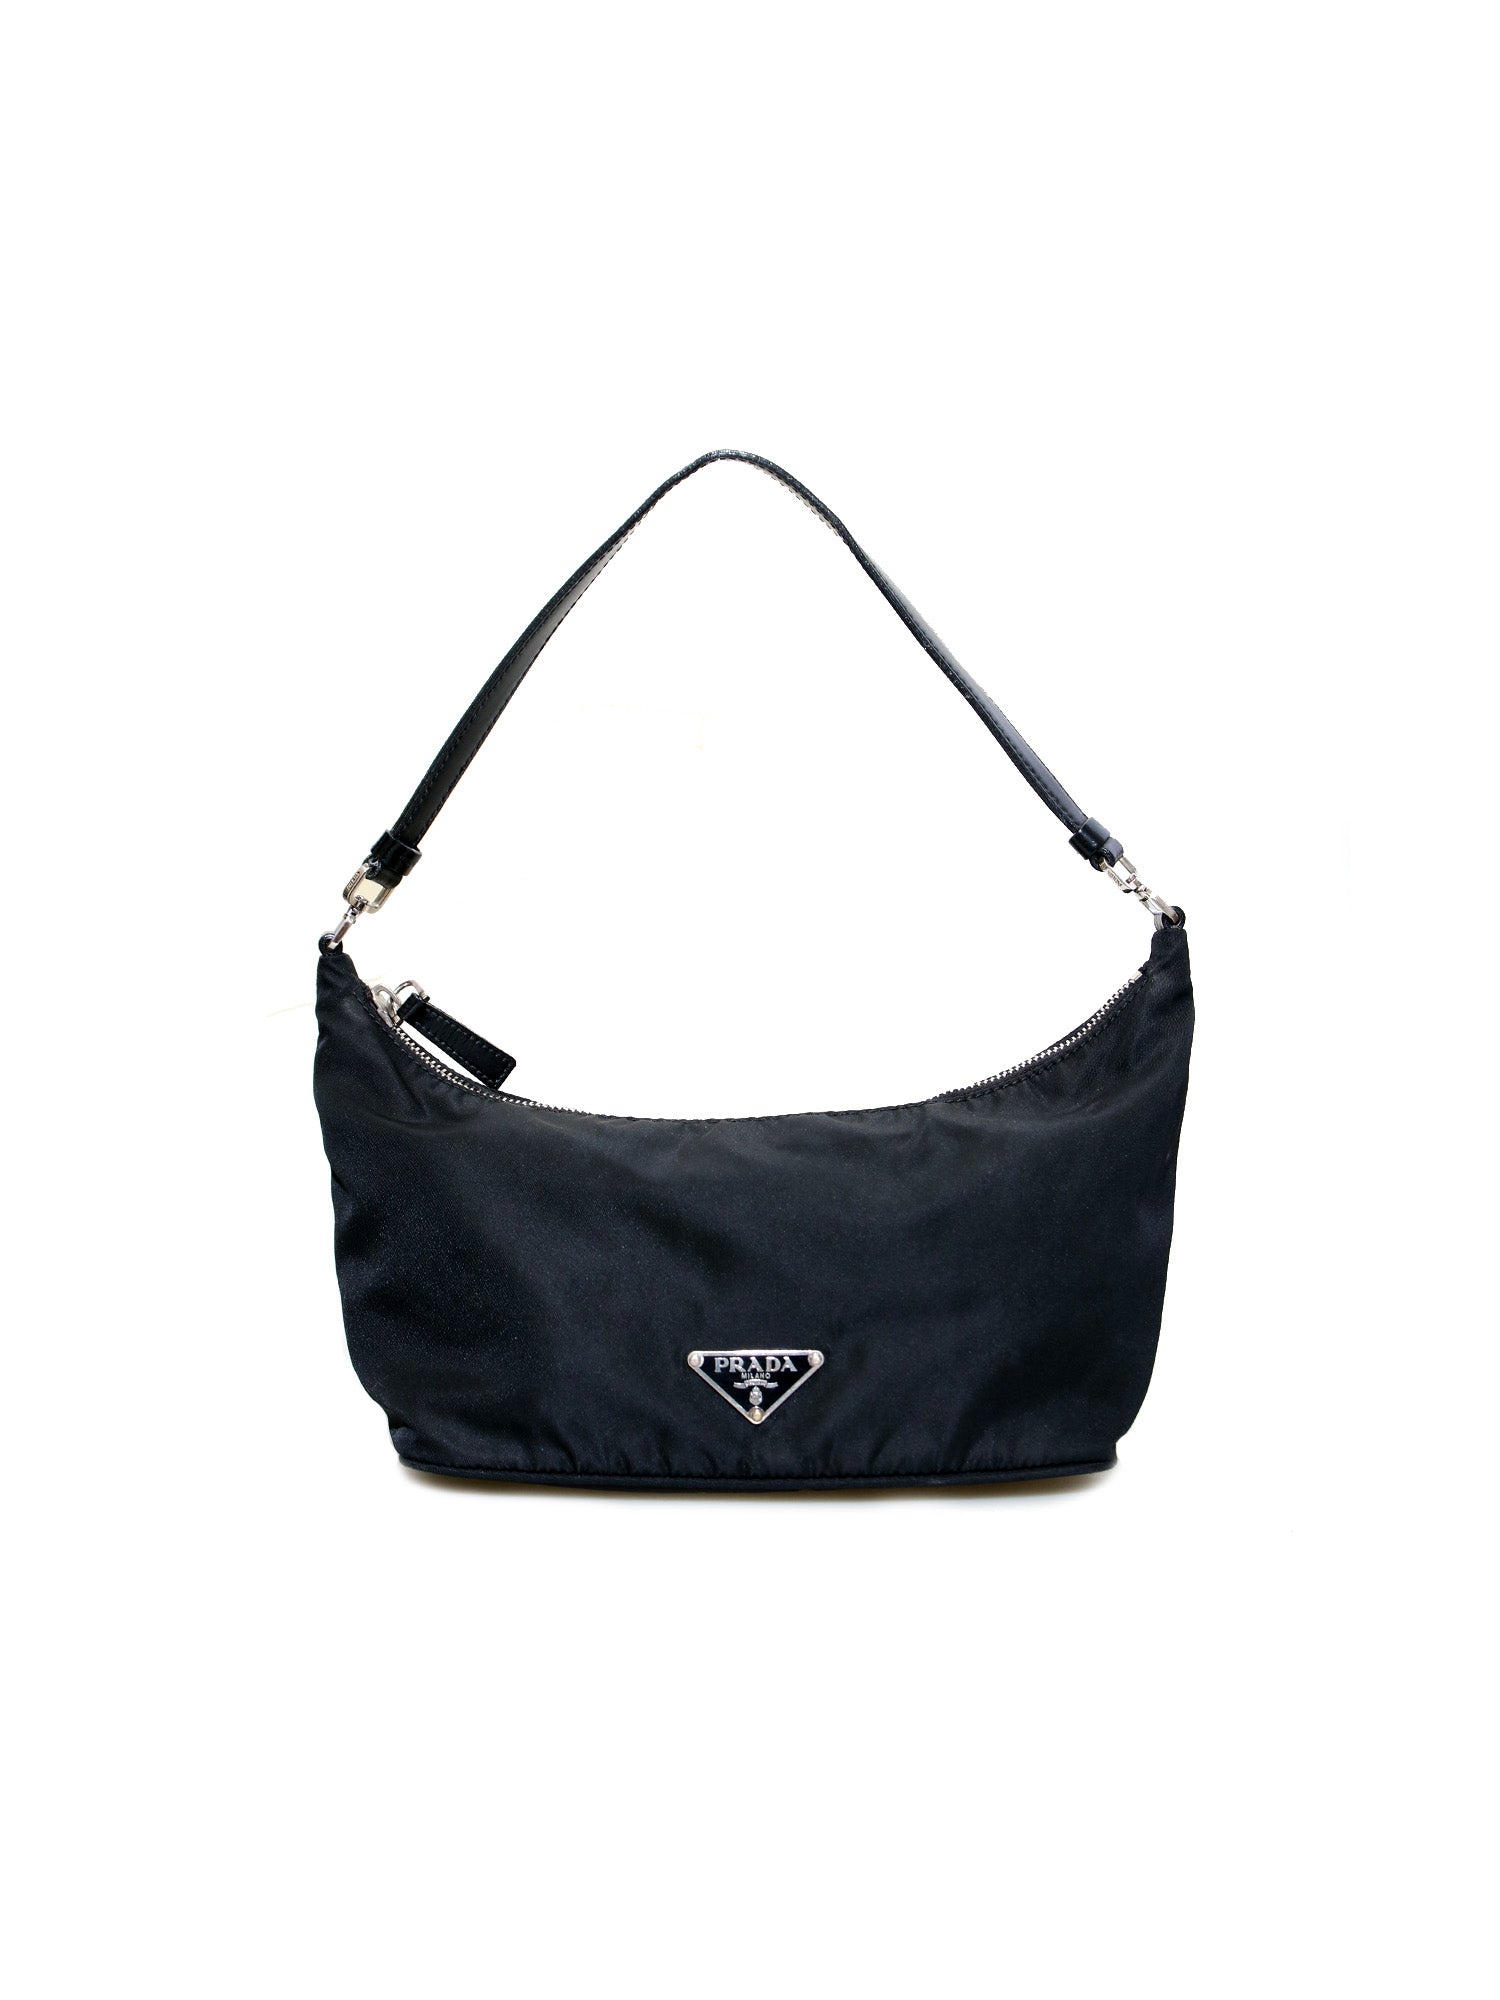 Fake Prada Hobo Bags Online UK Store In Australia Canada Perfect Replica  Bags